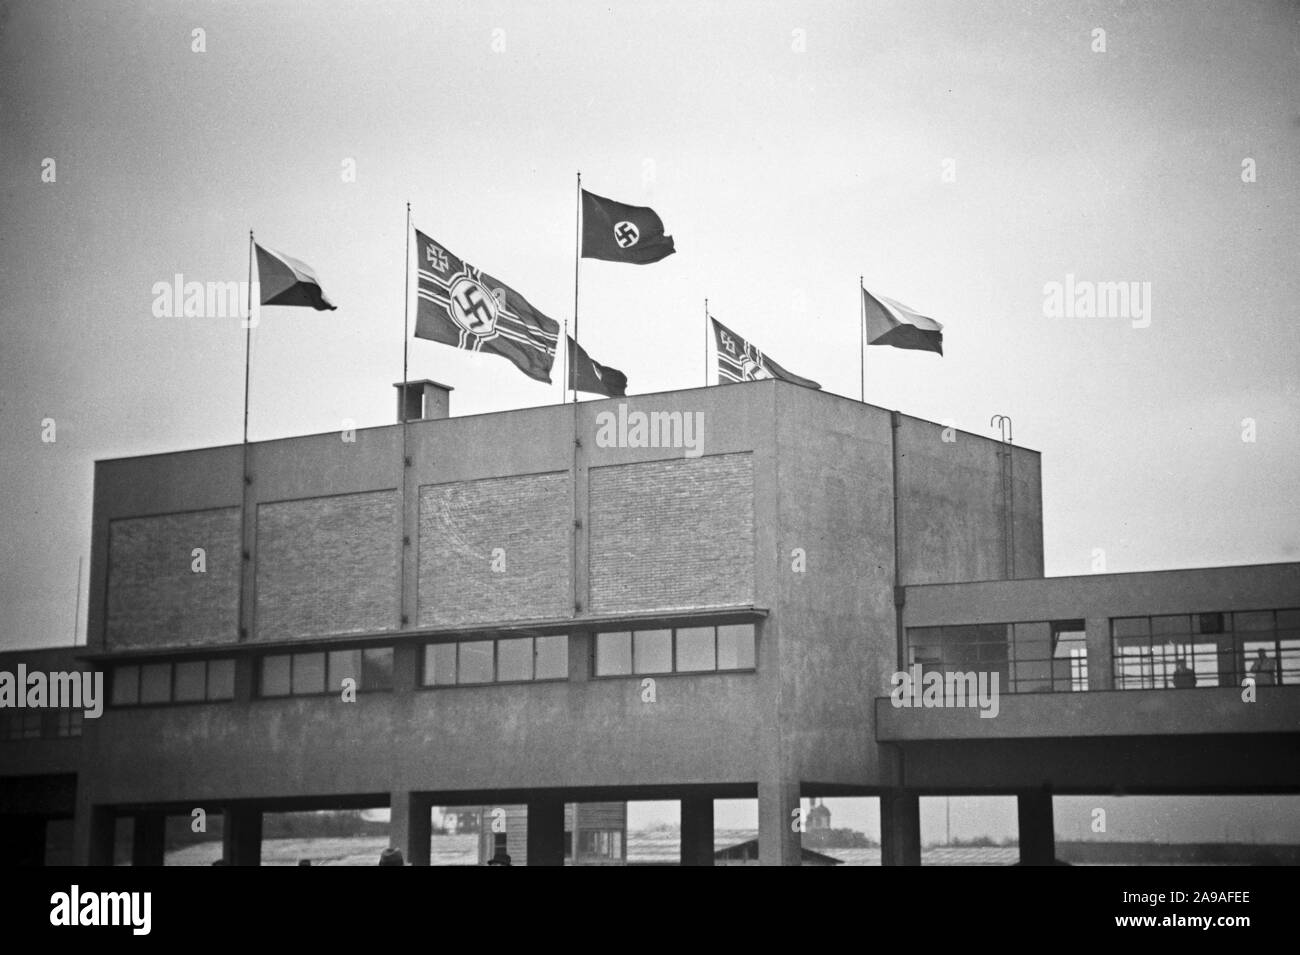 April im Sokol Stadion, wo die Geburtstagsfeier stattfand, zum ersten Male die Hakenkreuzfahne, rechts und links die tschechische Fahne, 1930er Jahre Stock Photo